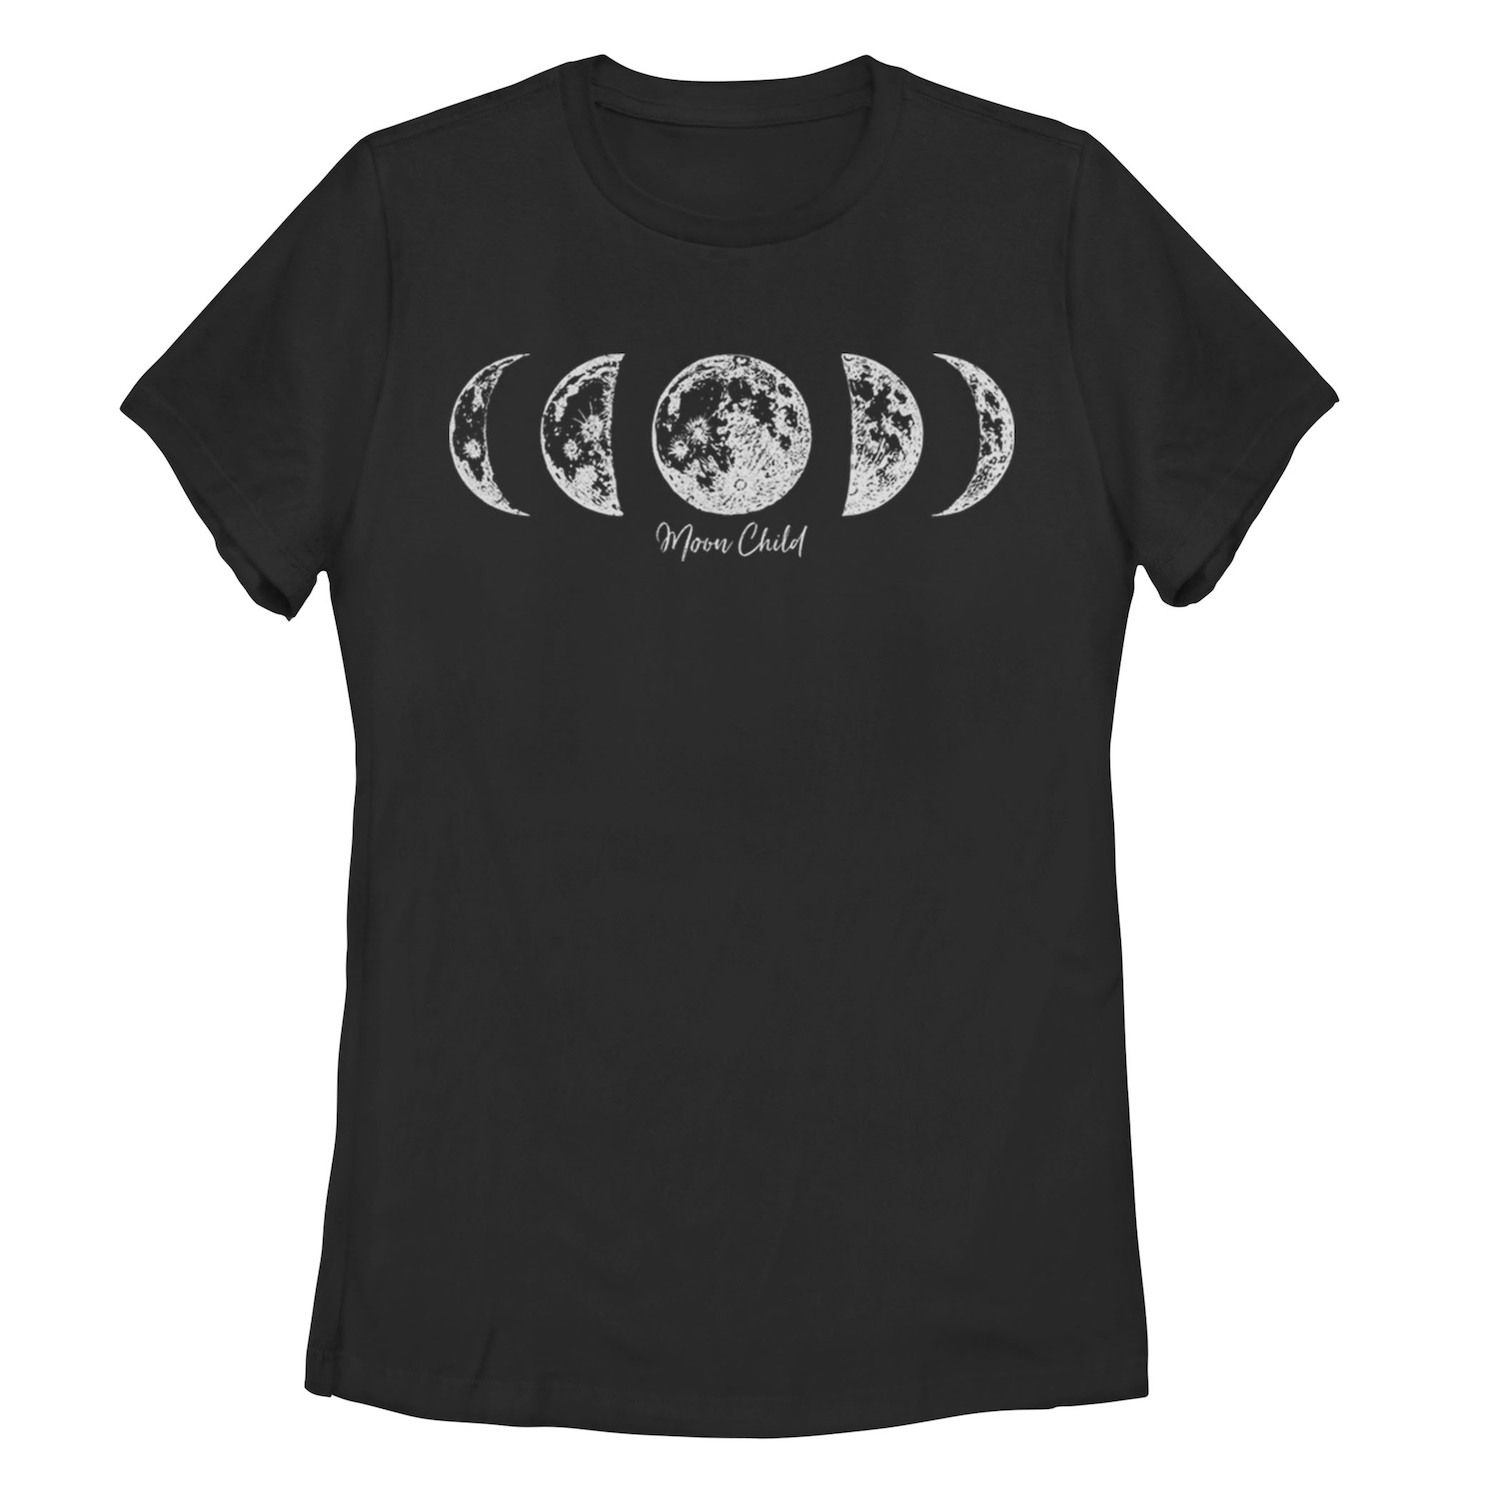 Детская футболка с рисунком Moon Child Galactic, черный